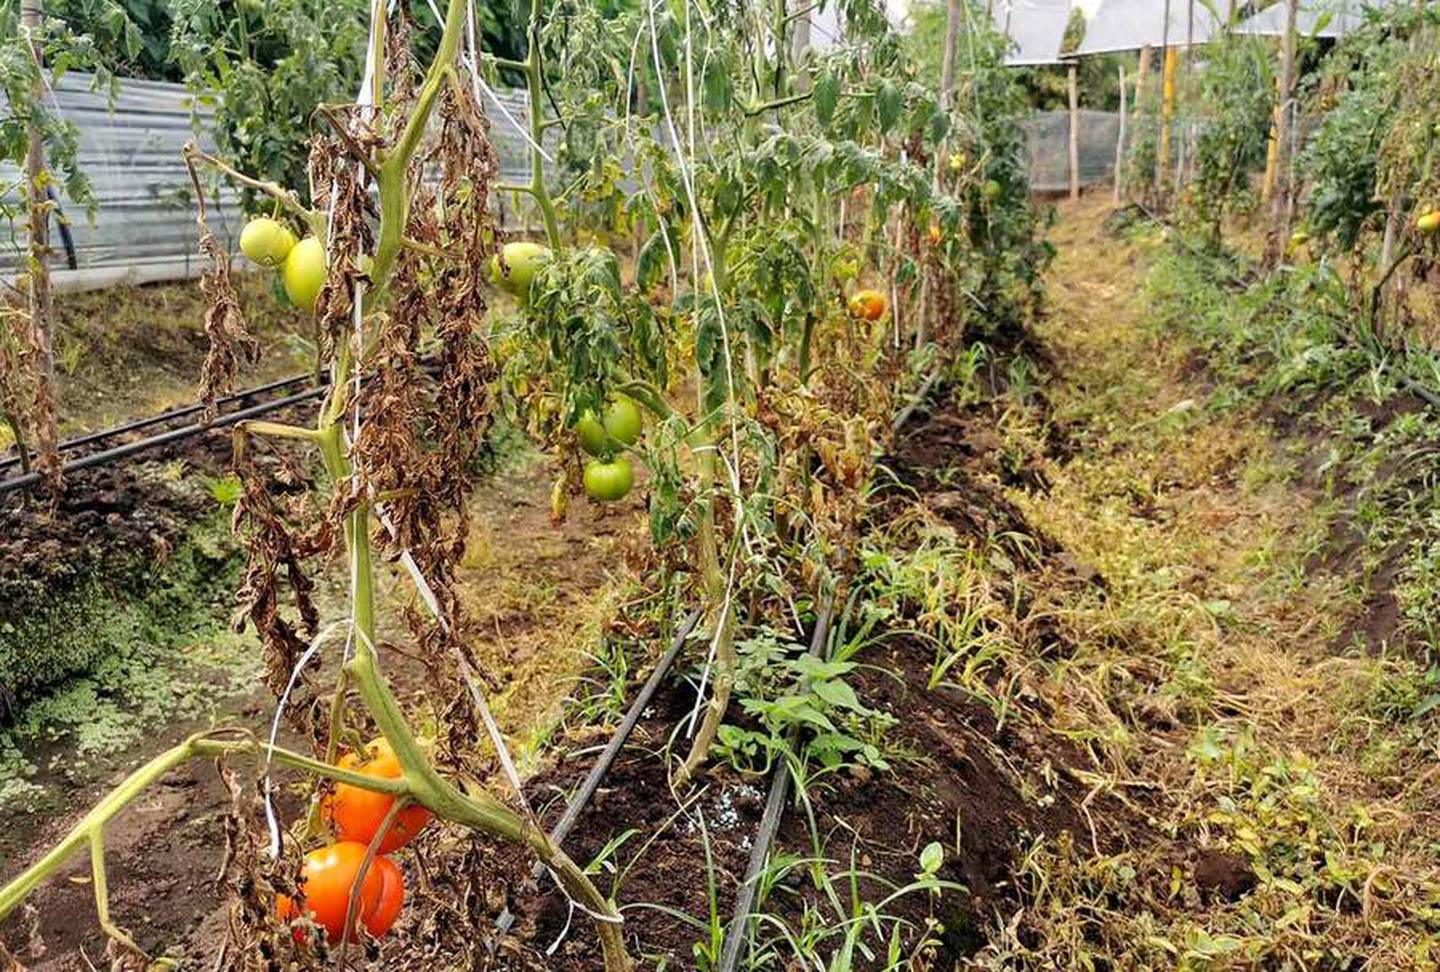 El tomate acorazado es un tomate híbrido creado en la estación experimental Fabio Baudrit de la Universidad de Costa Rica.

Fotografía: Pablo Mora Vargas / UCR